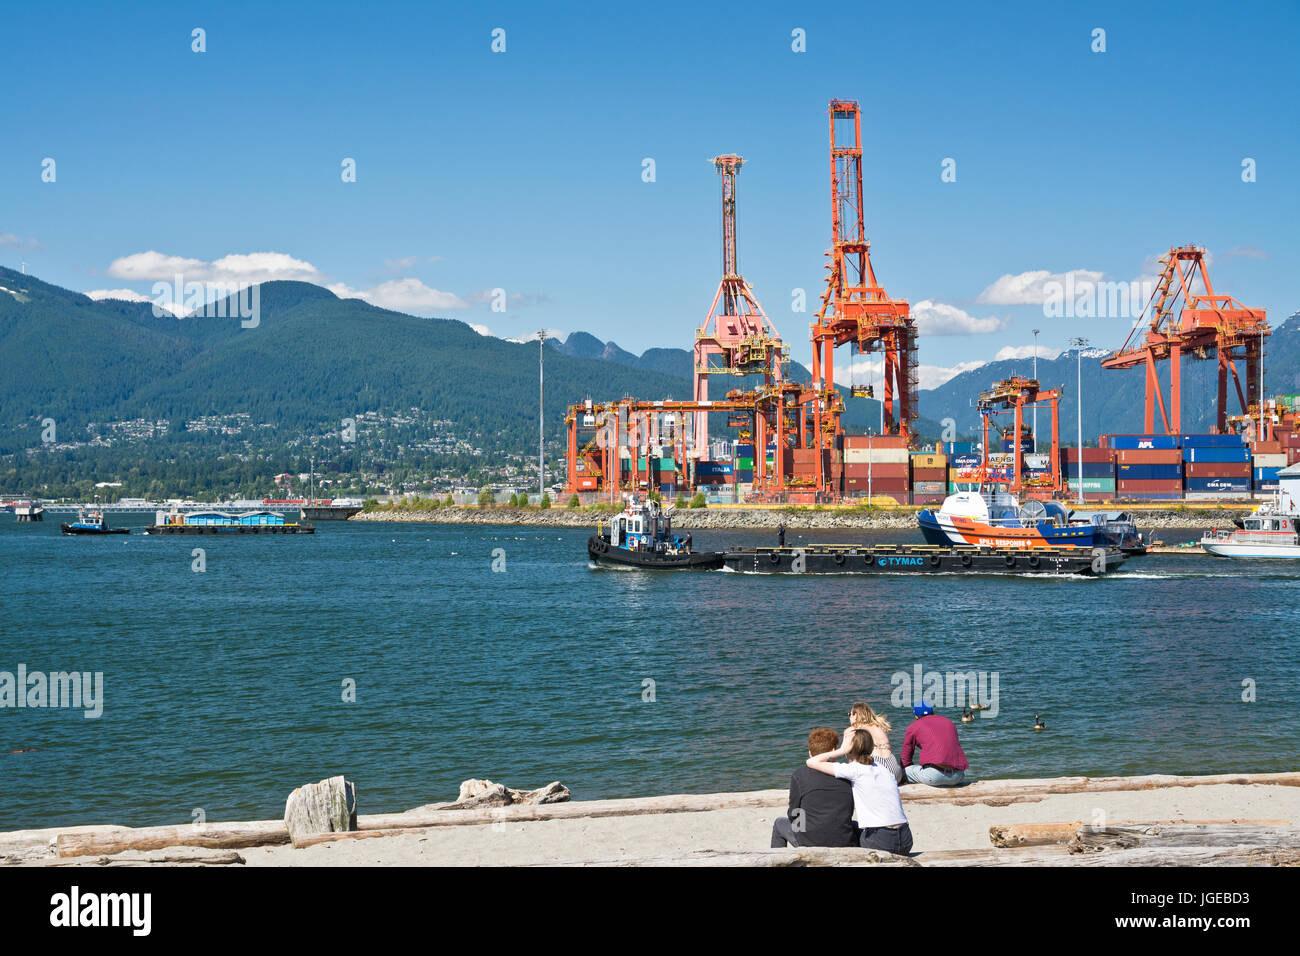 Le gru di carico del porto di Vancouver, come si vede dalle sponde del parco di granchio. Burrard ingresso e North Shore Mountains. Vancouver BC Canada Foto Stock